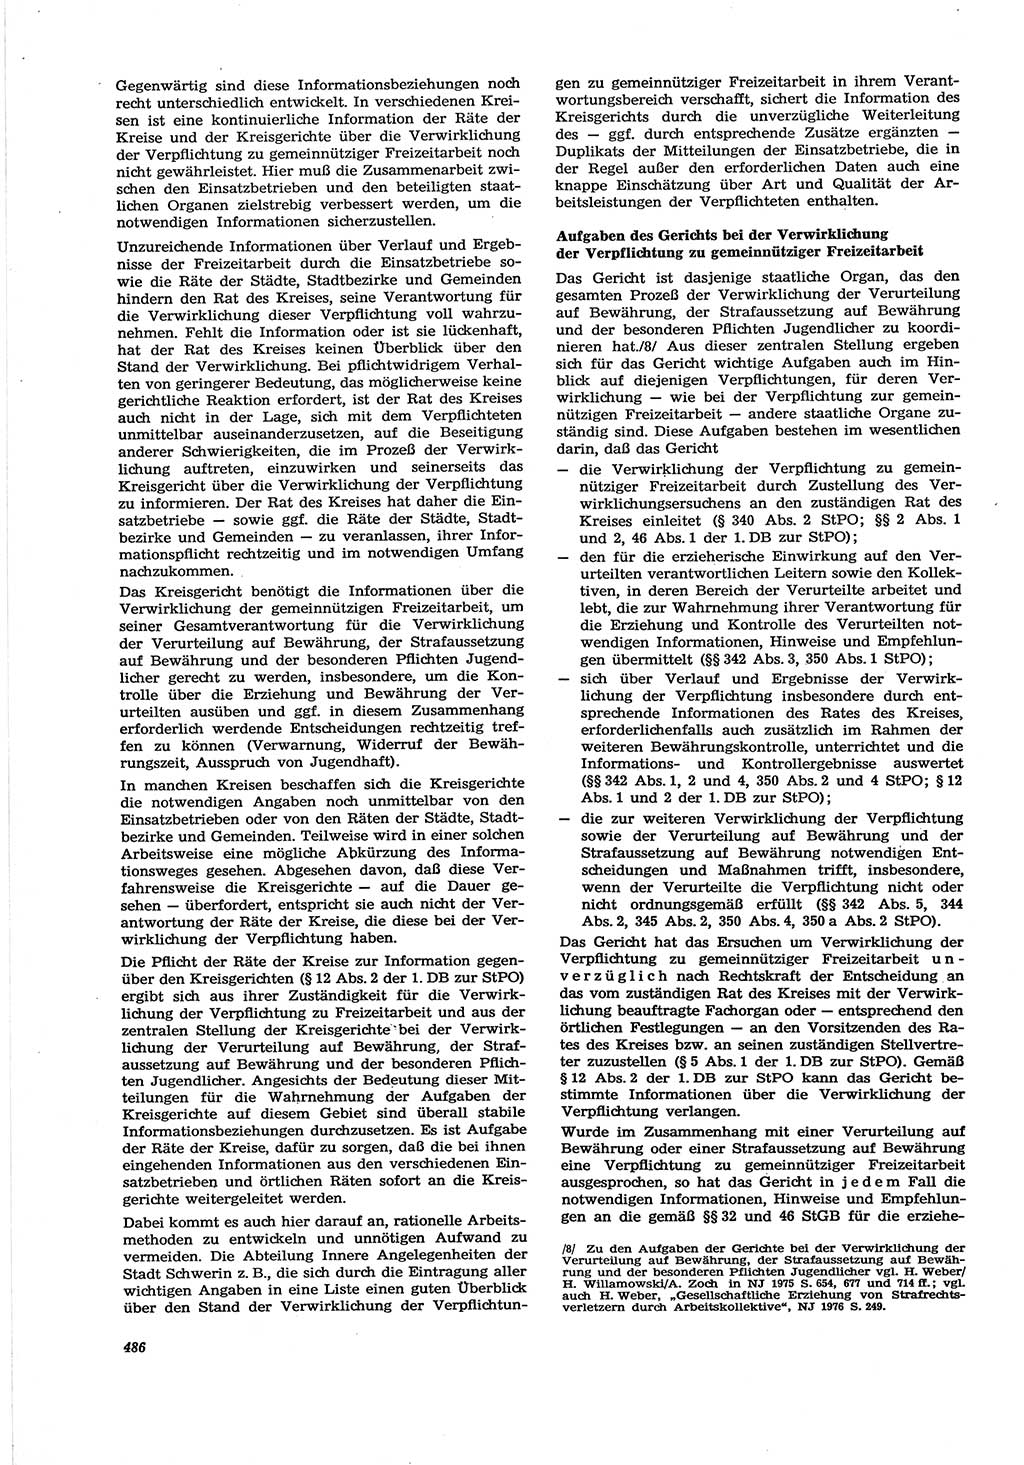 Neue Justiz (NJ), Zeitschrift für Recht und Rechtswissenschaft [Deutsche Demokratische Republik (DDR)], 30. Jahrgang 1976, Seite 486 (NJ DDR 1976, S. 486)